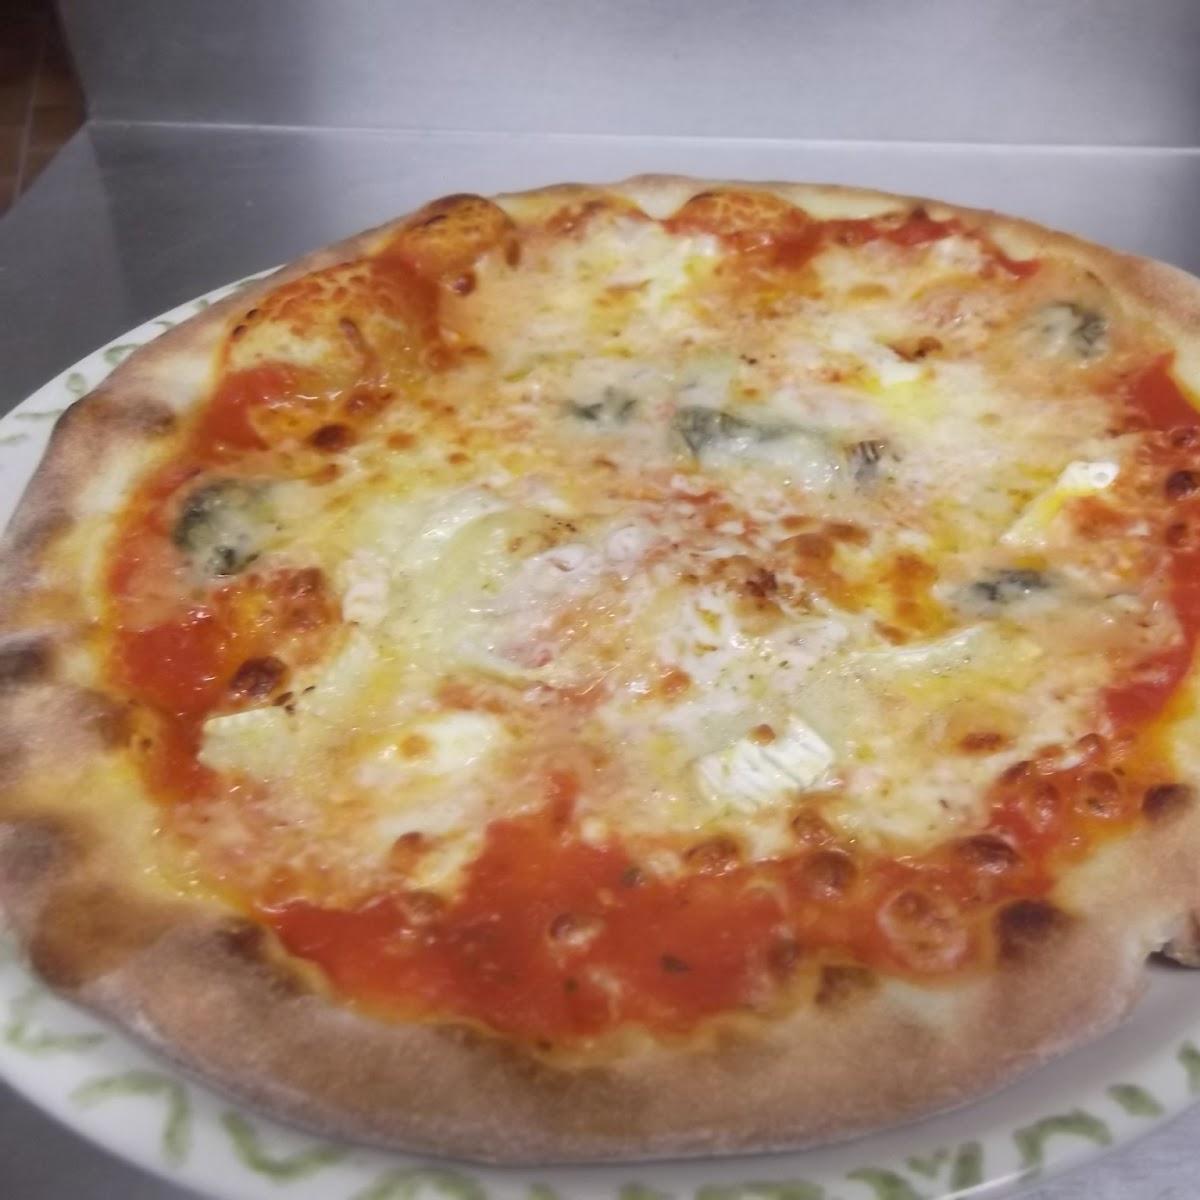 Restaurant "Pizza Napoli" in Oberschleißheim